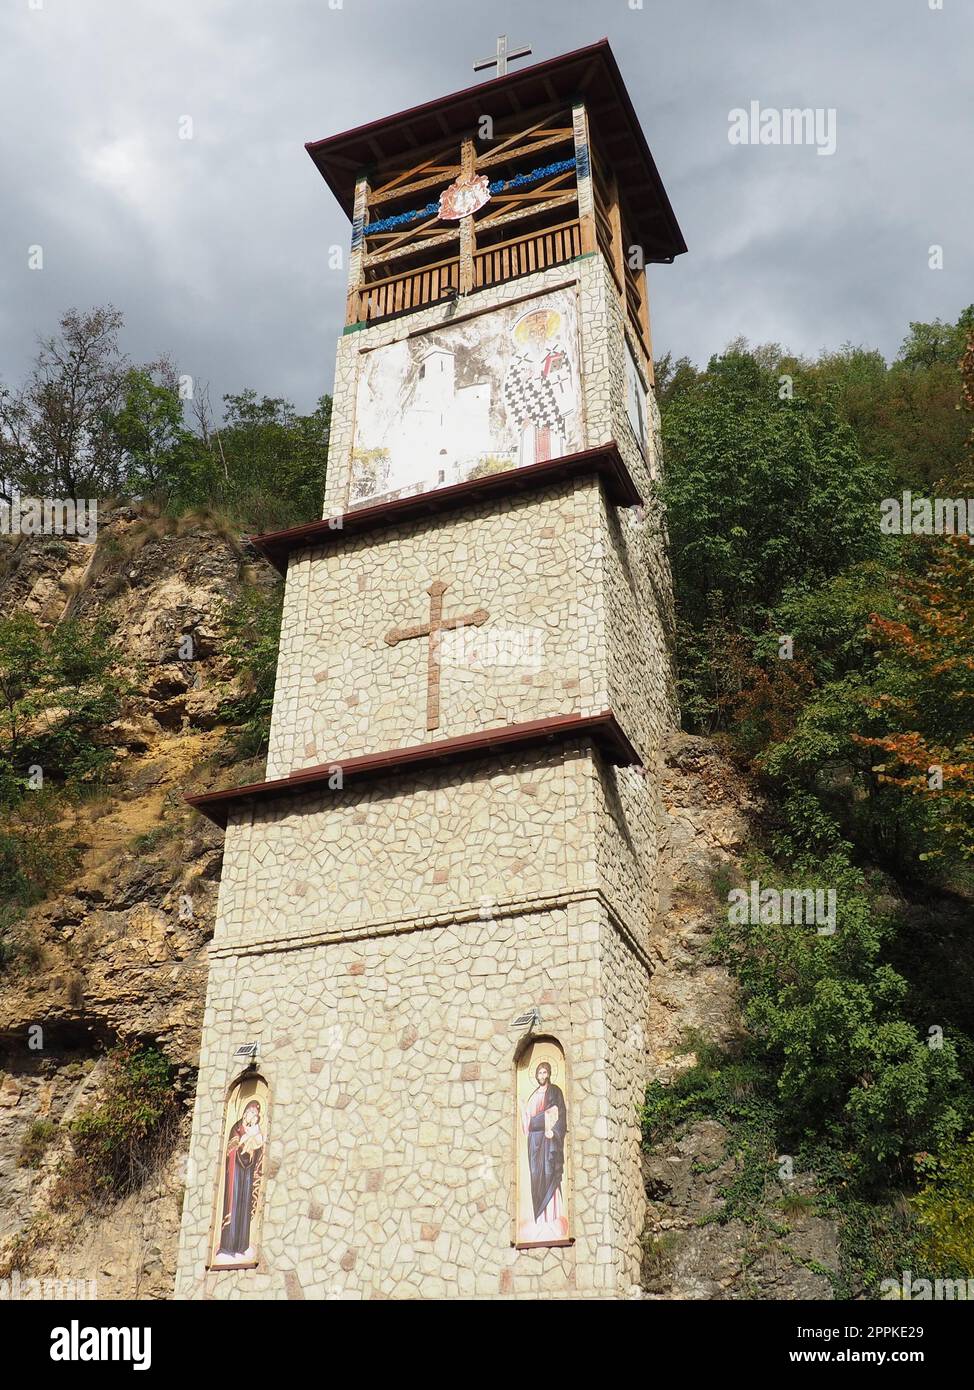 Mali Zvornik, Serbia, 29 settembre 2022 la Chiesa della Santa Croce, o Mali Ostrog, un luogo di culto nella roccia è stata scolpita in una grotta. Il tempio ha la forma di una croce, sepolta nel terreno. Foto Stock